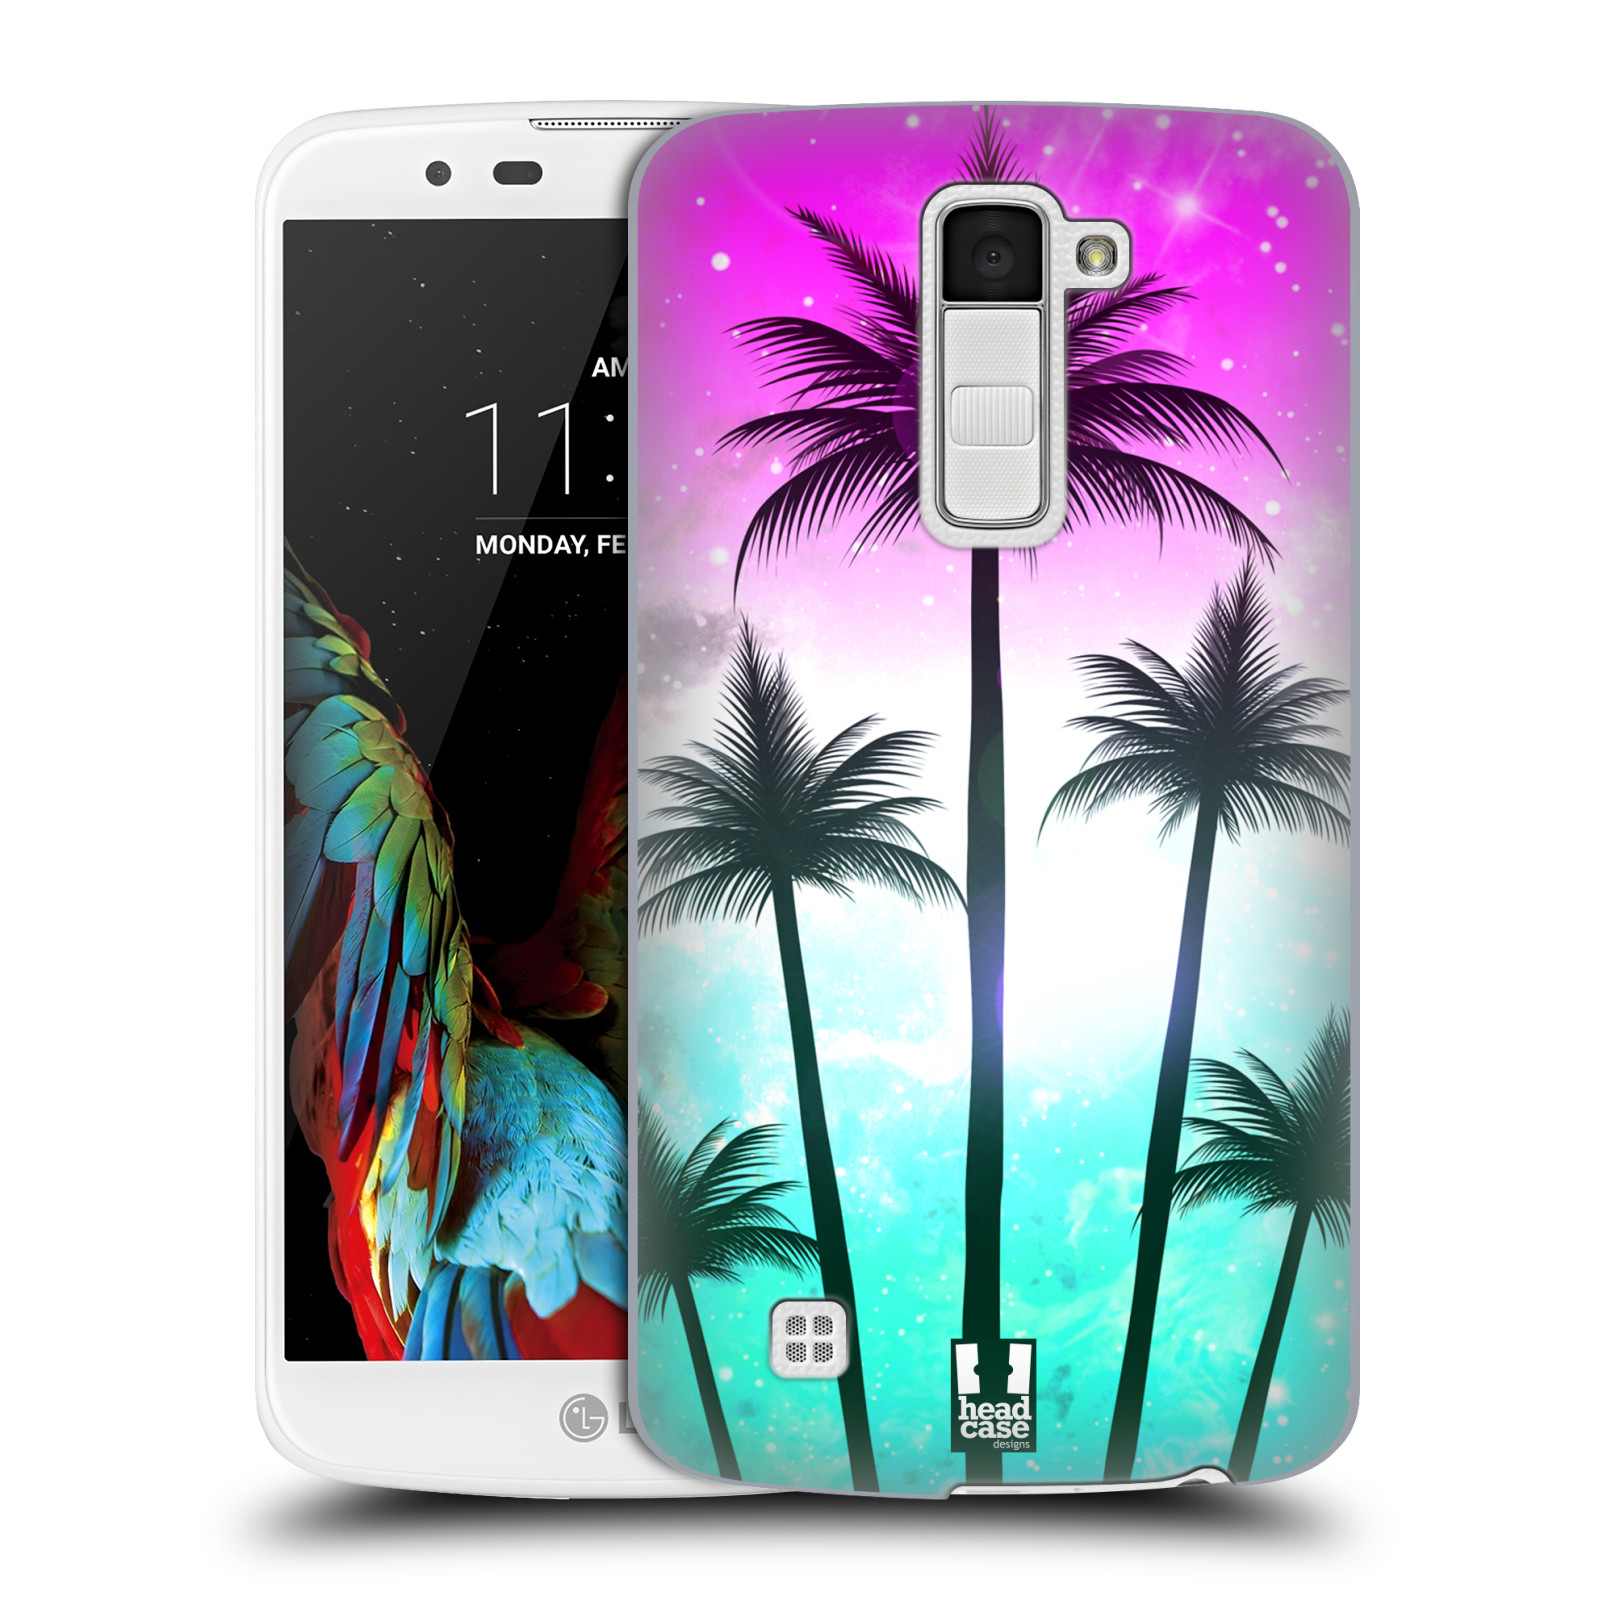 HEAD CASE plastový obal na mobil LG K10 vzor Kreslený motiv silueta moře a palmy RŮŽOVÁ A TYRKYS